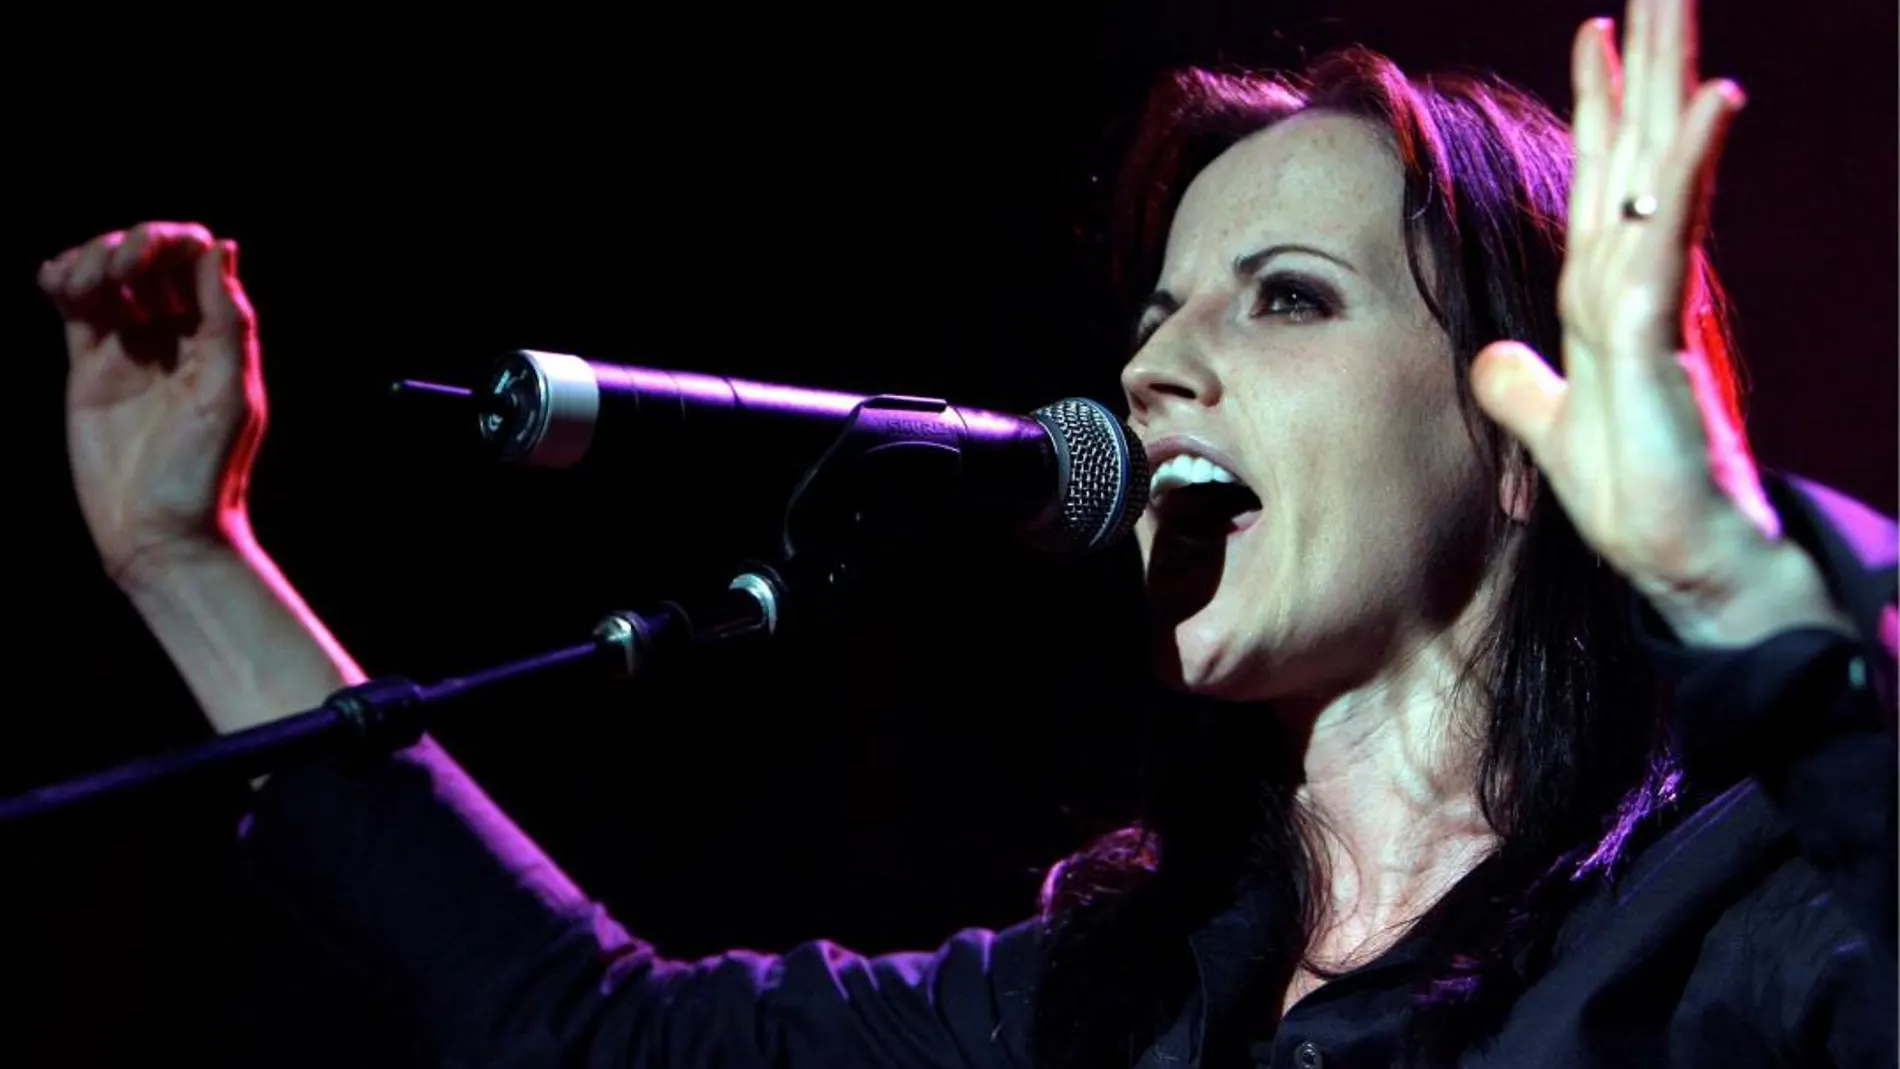 Imagen de archivo de la cantante del grupo musical The Cranberries, Dolores O'Riordan, durante una actuación de su gira en solitario en Zúrich, Suiza, el 1 de junio de 2007